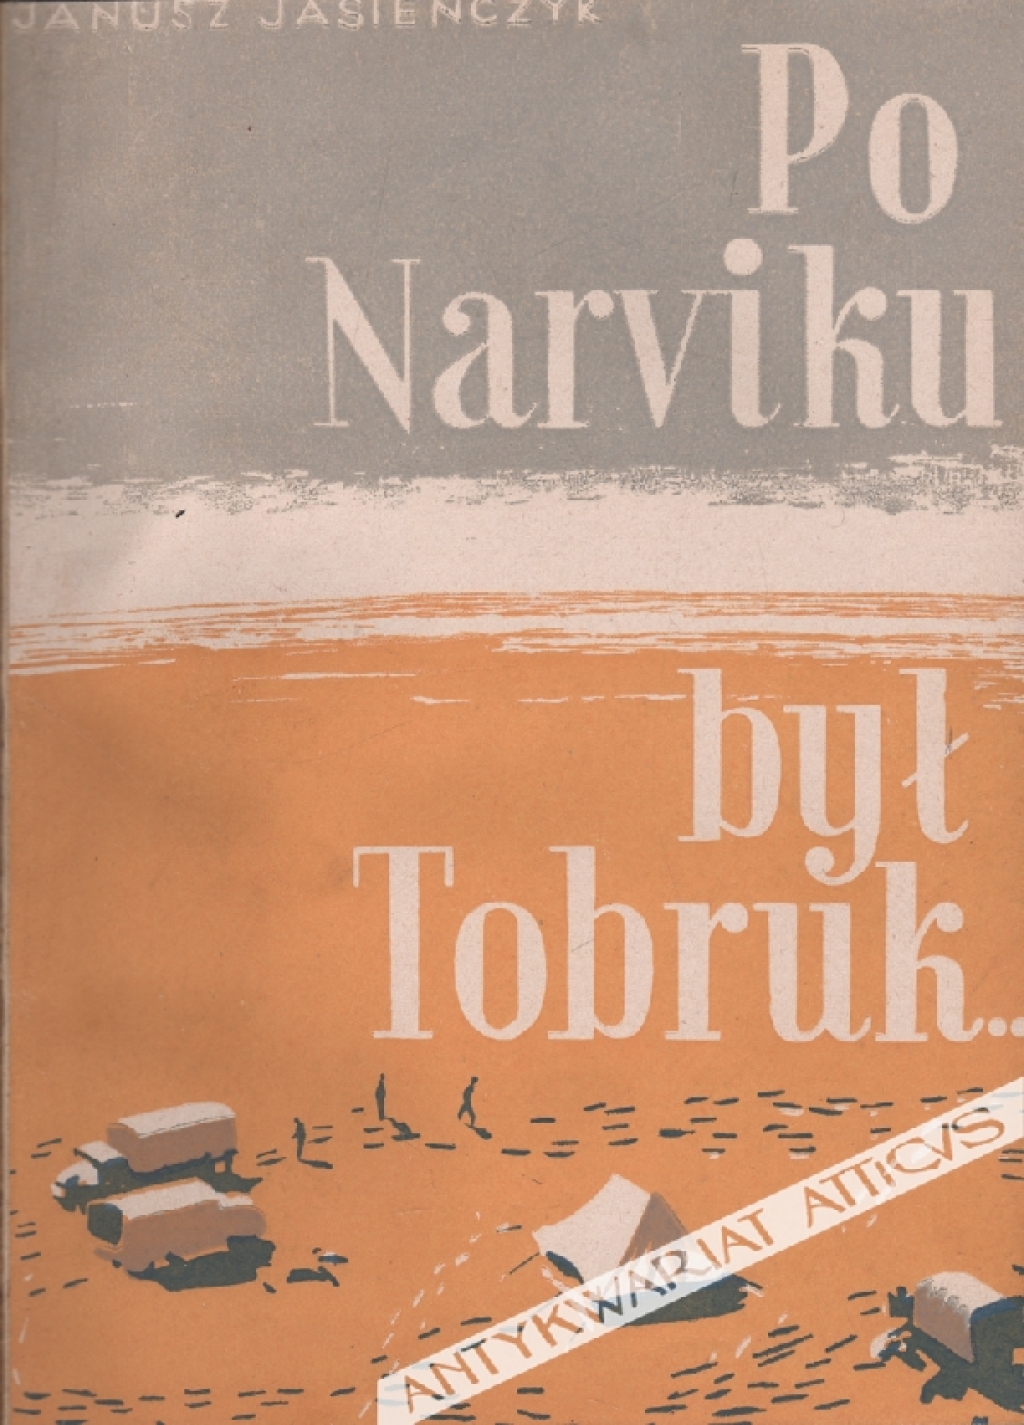 Po Narviku był Tobruk...